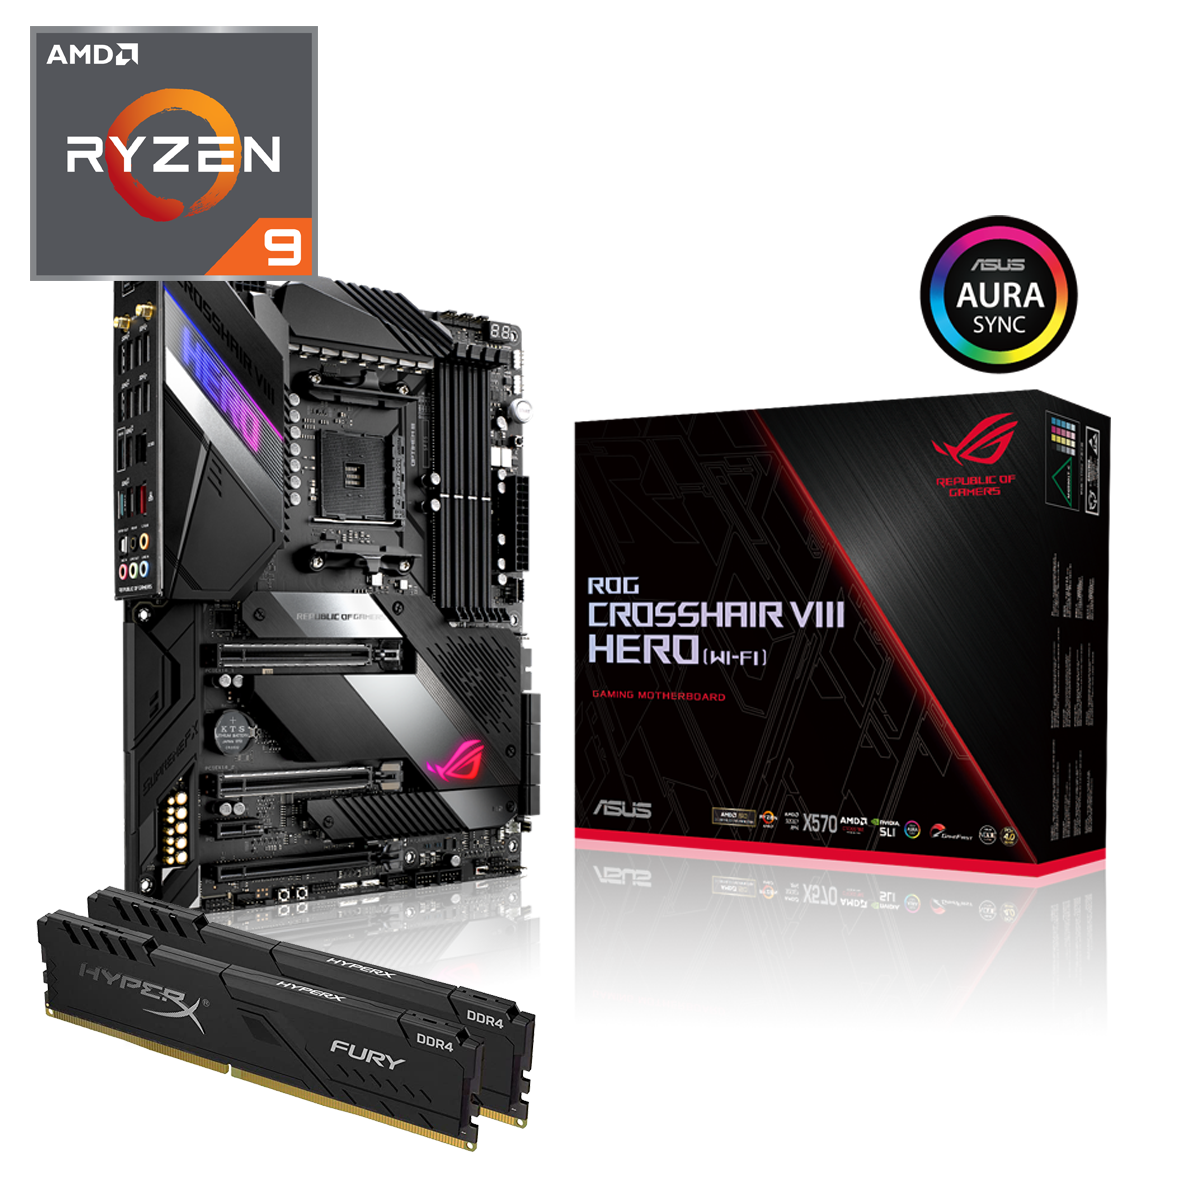 AMD - AMD Ryzen 9 5900X - Asus ROG Crosshair VIII Hero Wi-Fi Bundle